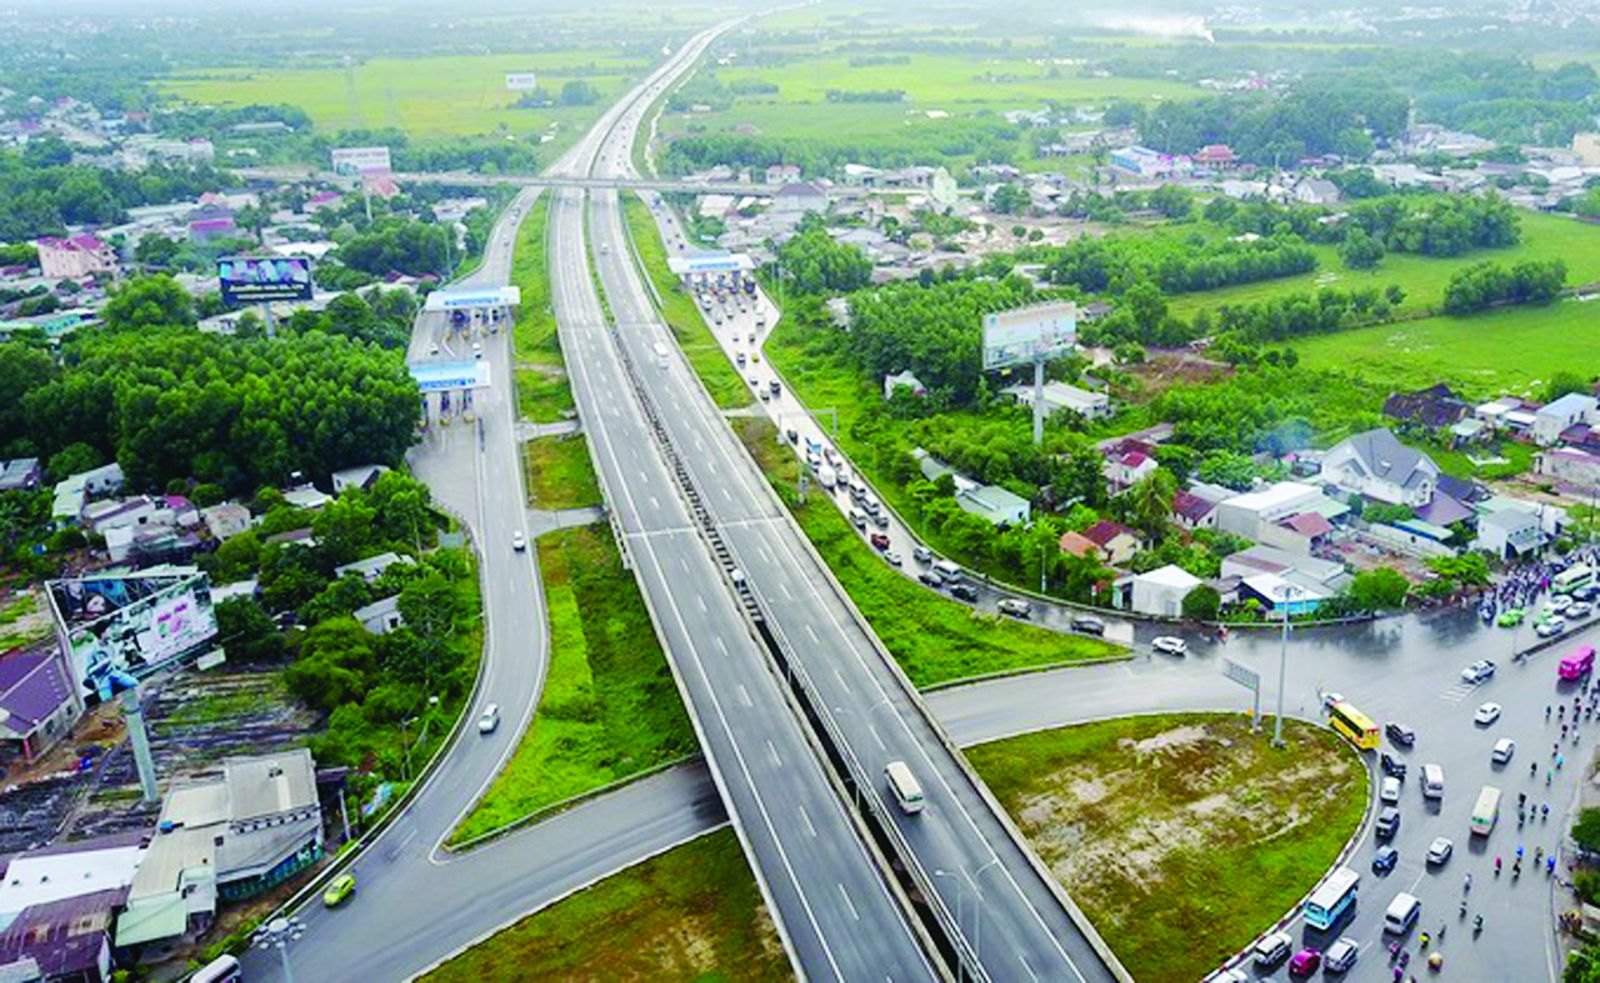  Luật PPP đã ra đời nhưng việc thu hút vốn đầu tư vào hạ tầng giao thông vẫn gặp rất nhiều khó khăn. (Ảnh: Cao tốc Bắc Nam)